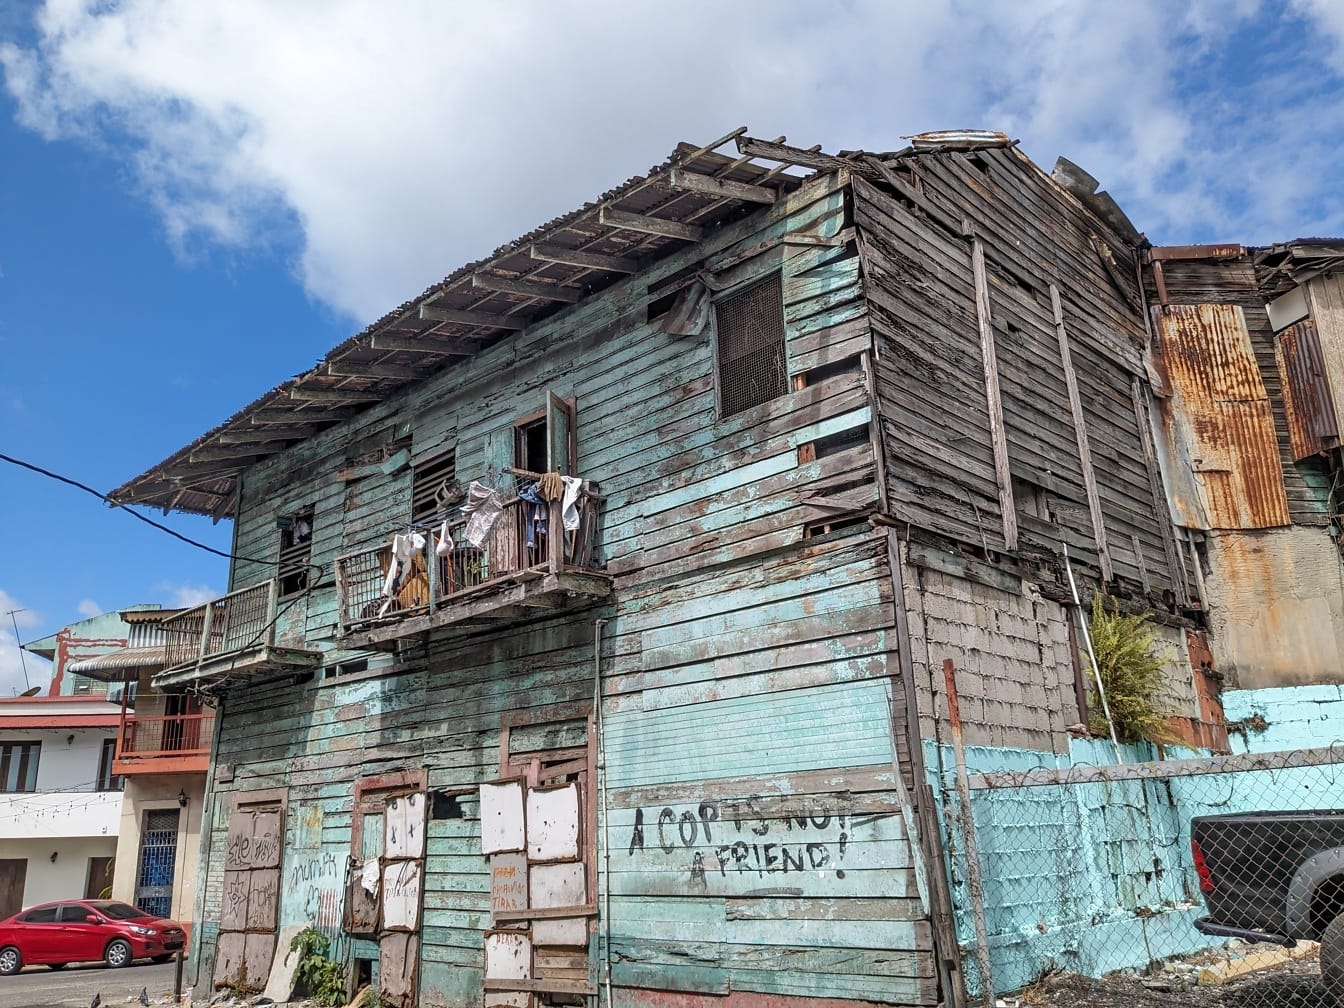 Rumah tua yang ditinggalkan dengan grafiti di samping di distrik kota yang miskin